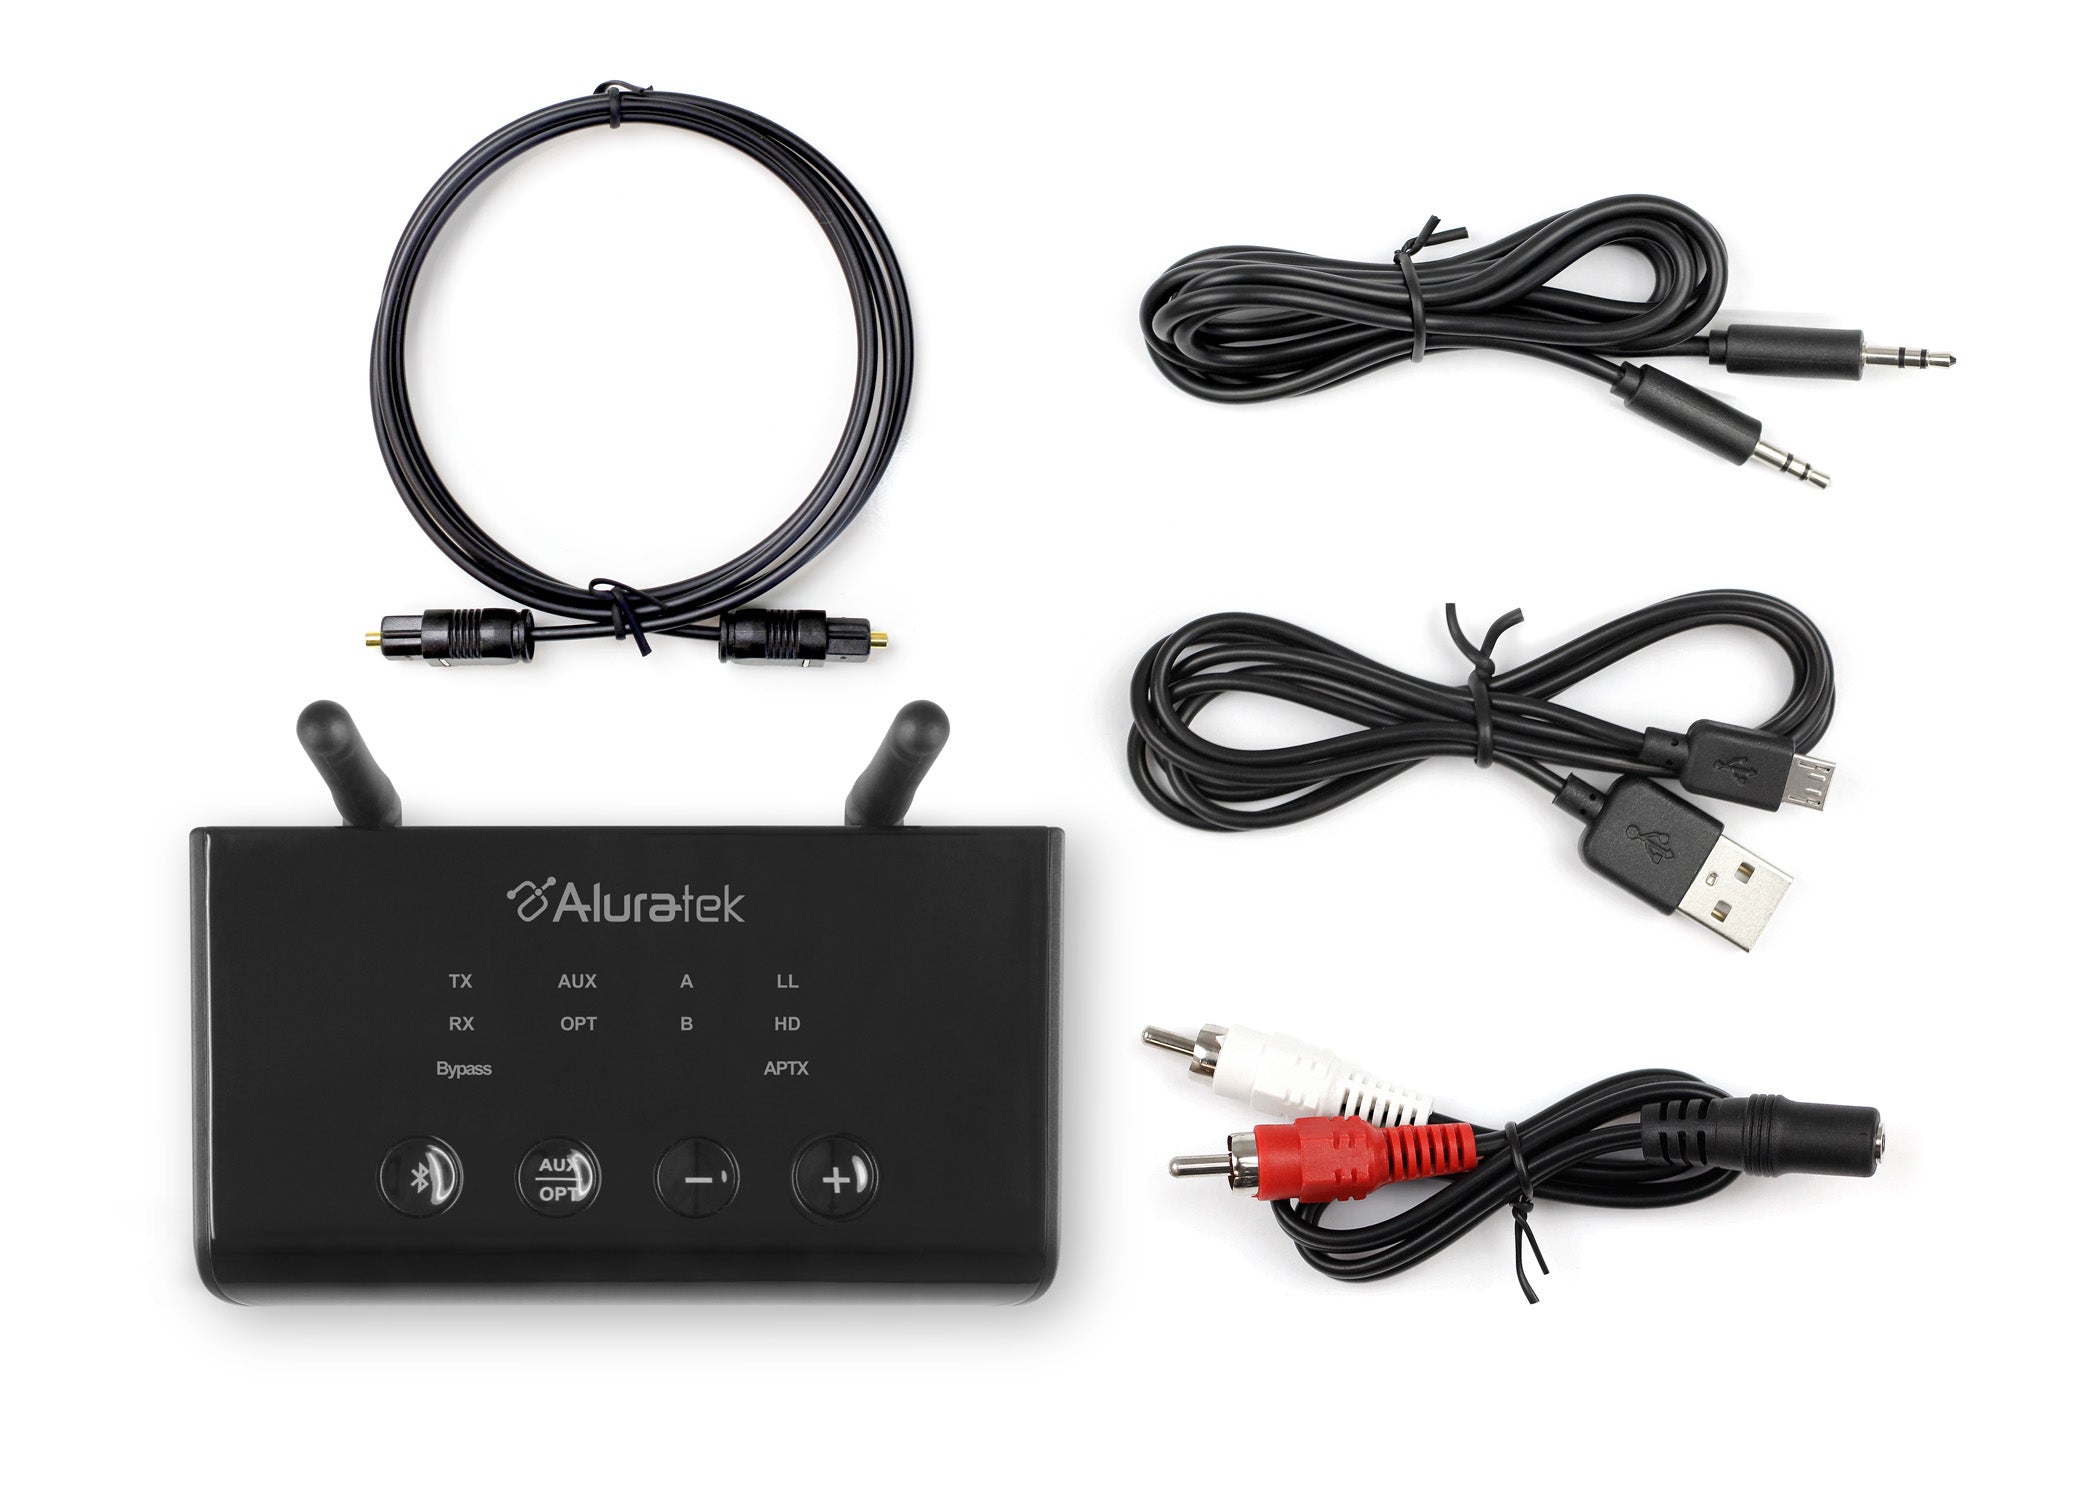 Récepteur audio Bluetooth 5.0, adaptateur audio sans fil Bluetooth stéréo  pour récepteur stéréo avec 3,5